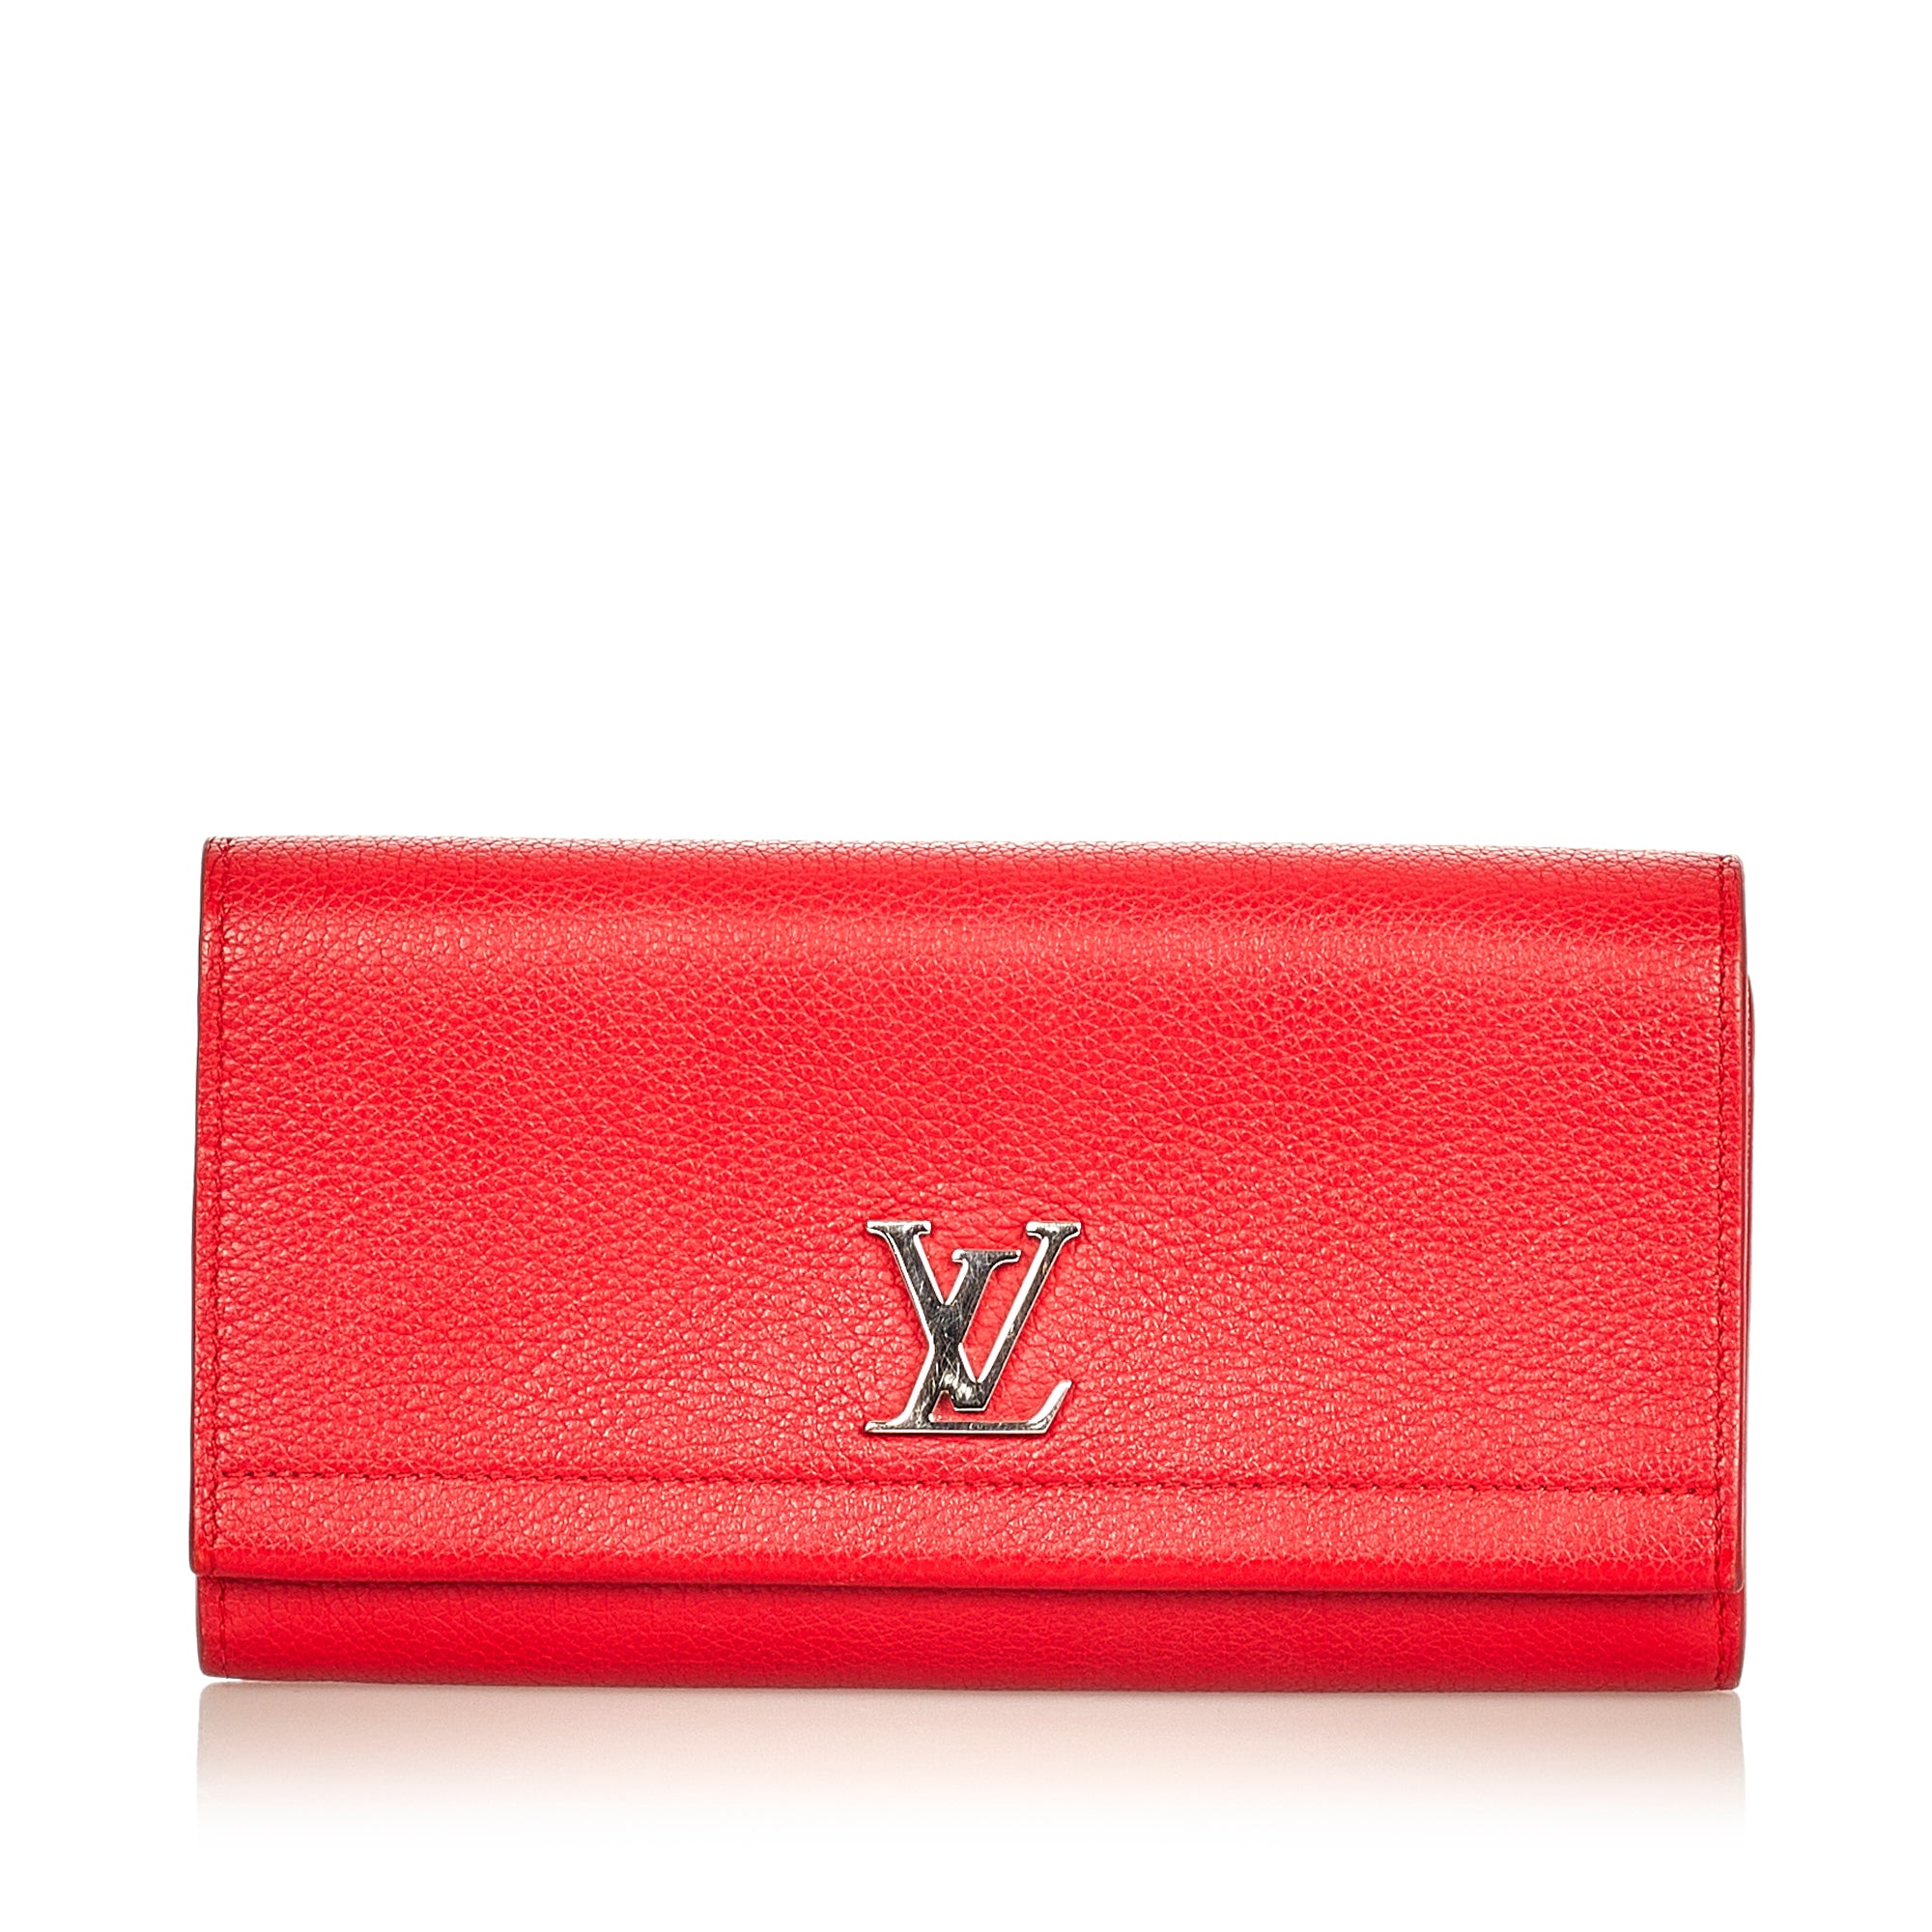 Preloved Louis Vuitton Saint Germain Red Monogram Empreinte